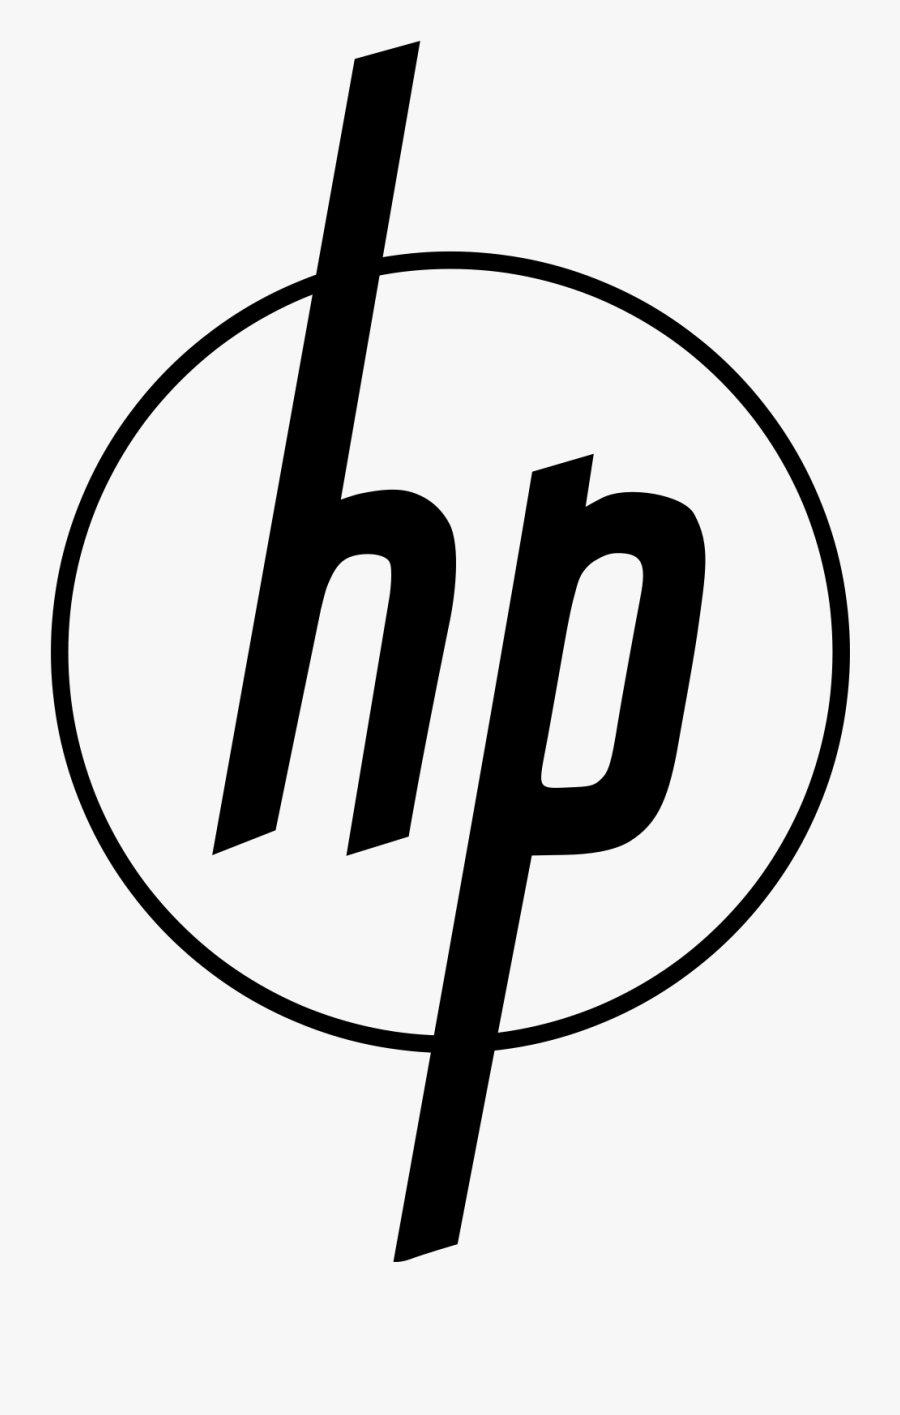 Hewlett Packard First Logo - Hp Logo 1954, Transparent Clipart